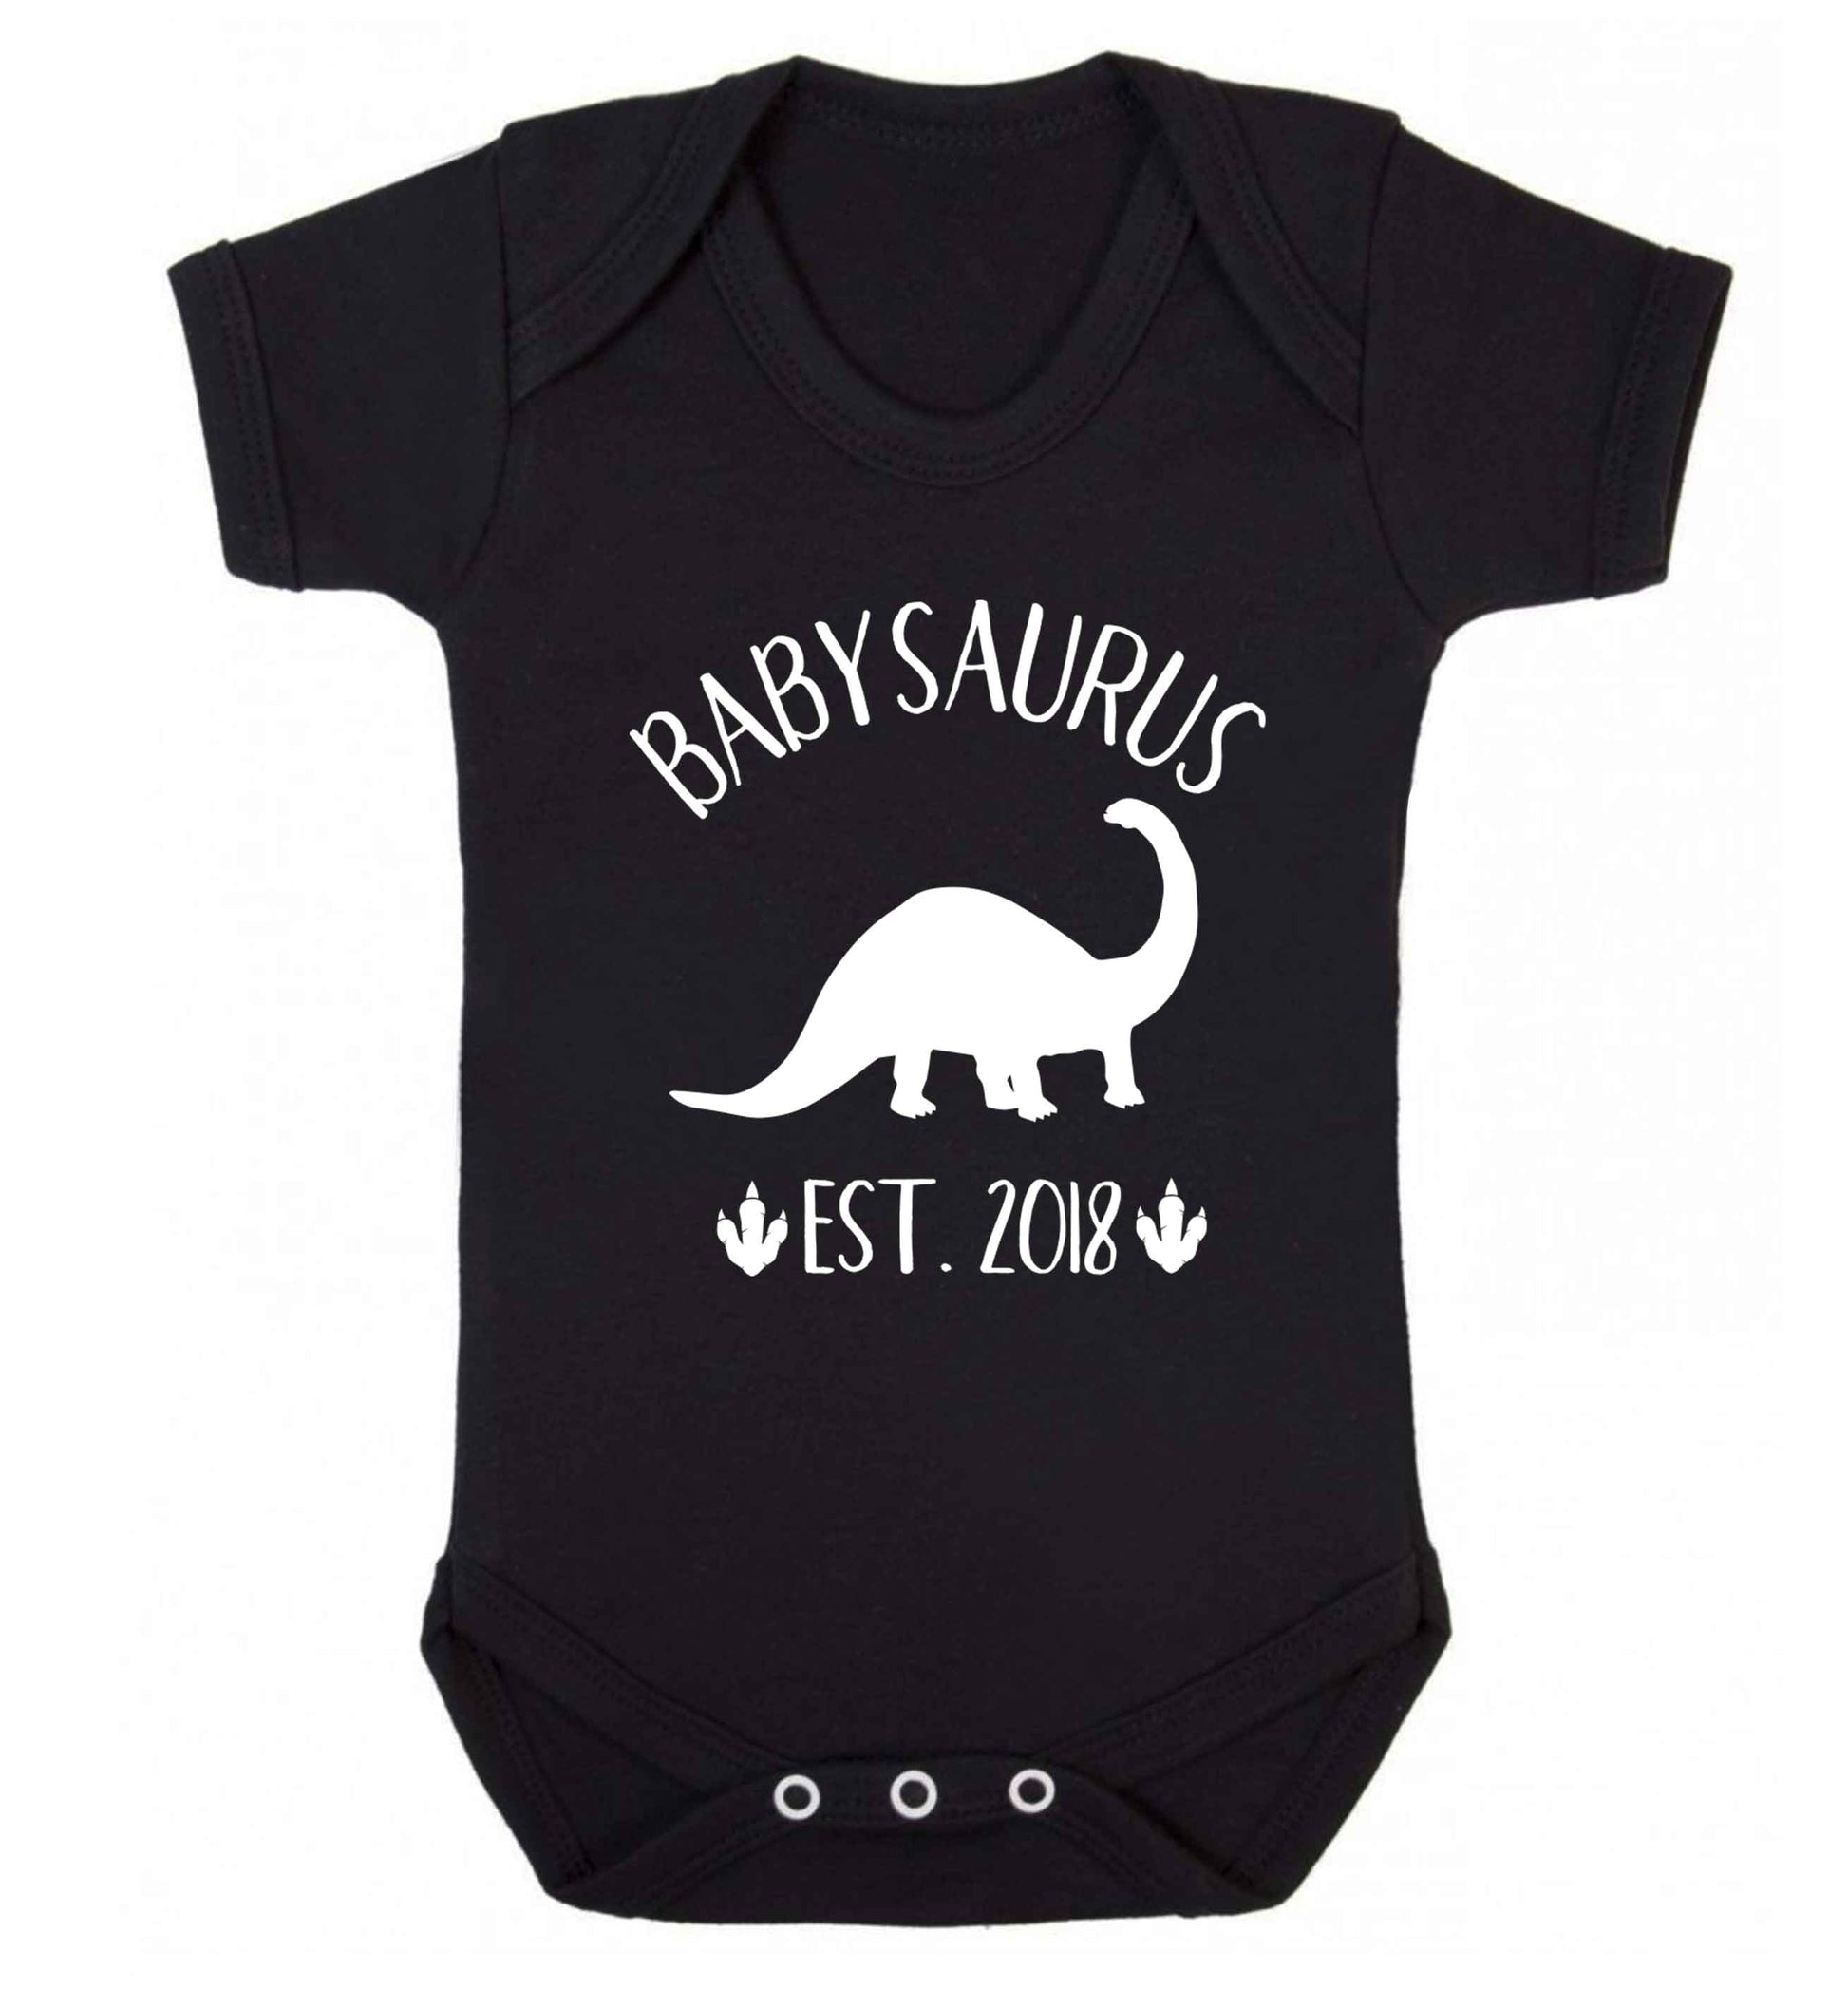 Personalised babysaurus since (custom date) Baby Vest black 18-24 months